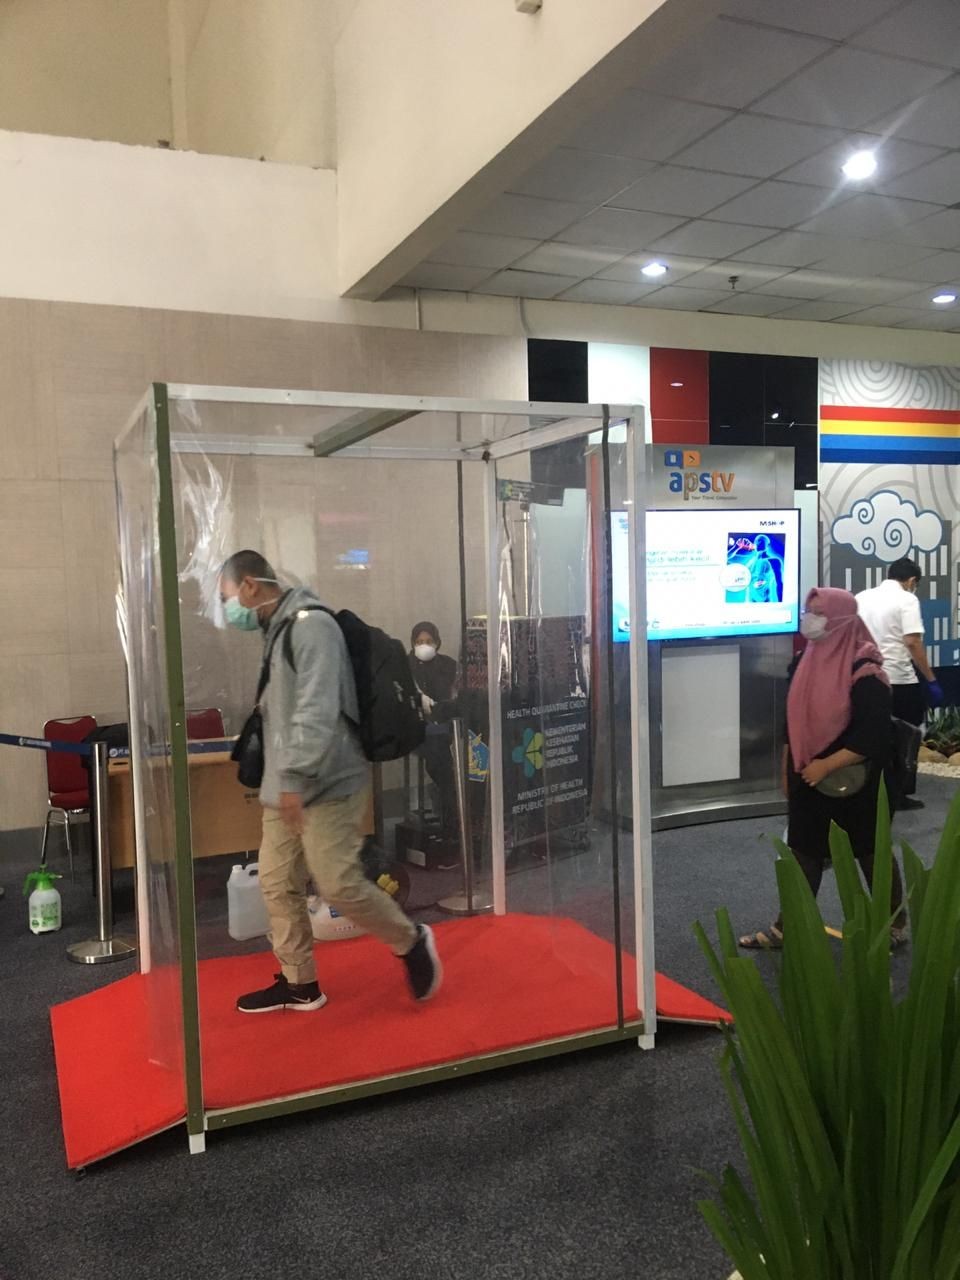 Cegah Penyebaran Corona, Bandara Kualanamu Sediakan Ruang Sterilisasi